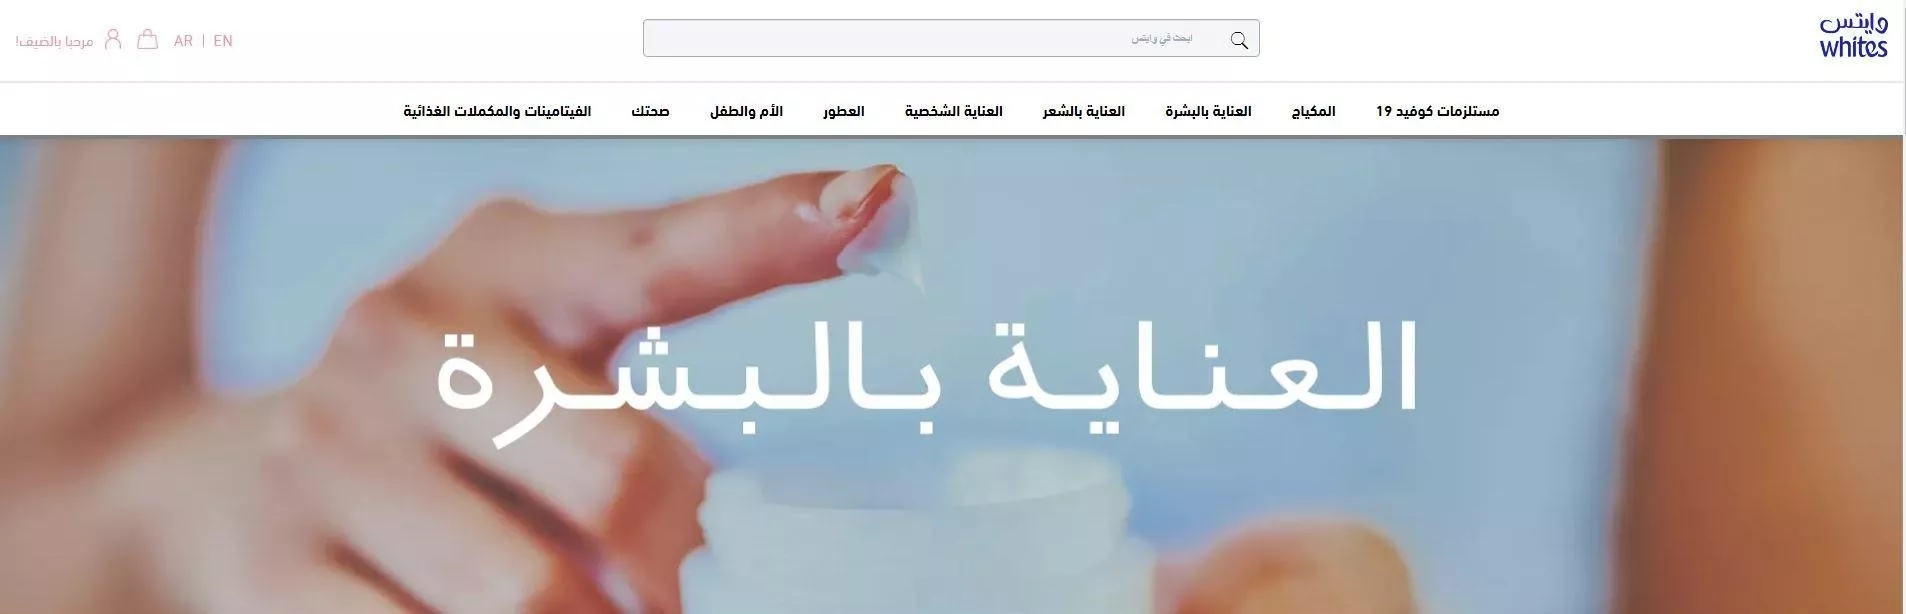 صيف 2020: مواقع وتطبيقات خدمة توصيل مستحضرات جمال إلى السعودية وباقي الدول العربية